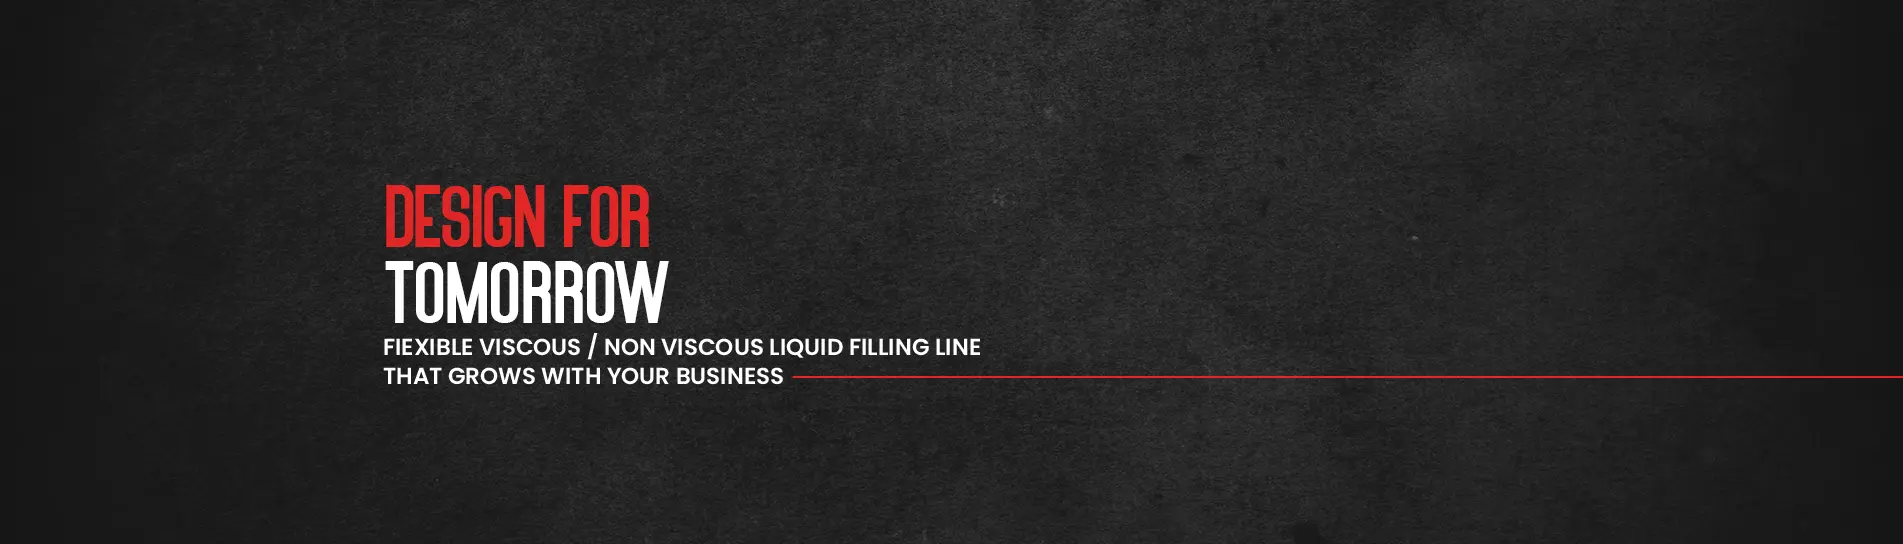 Viscous/Non Viscous Liquid Filling Line